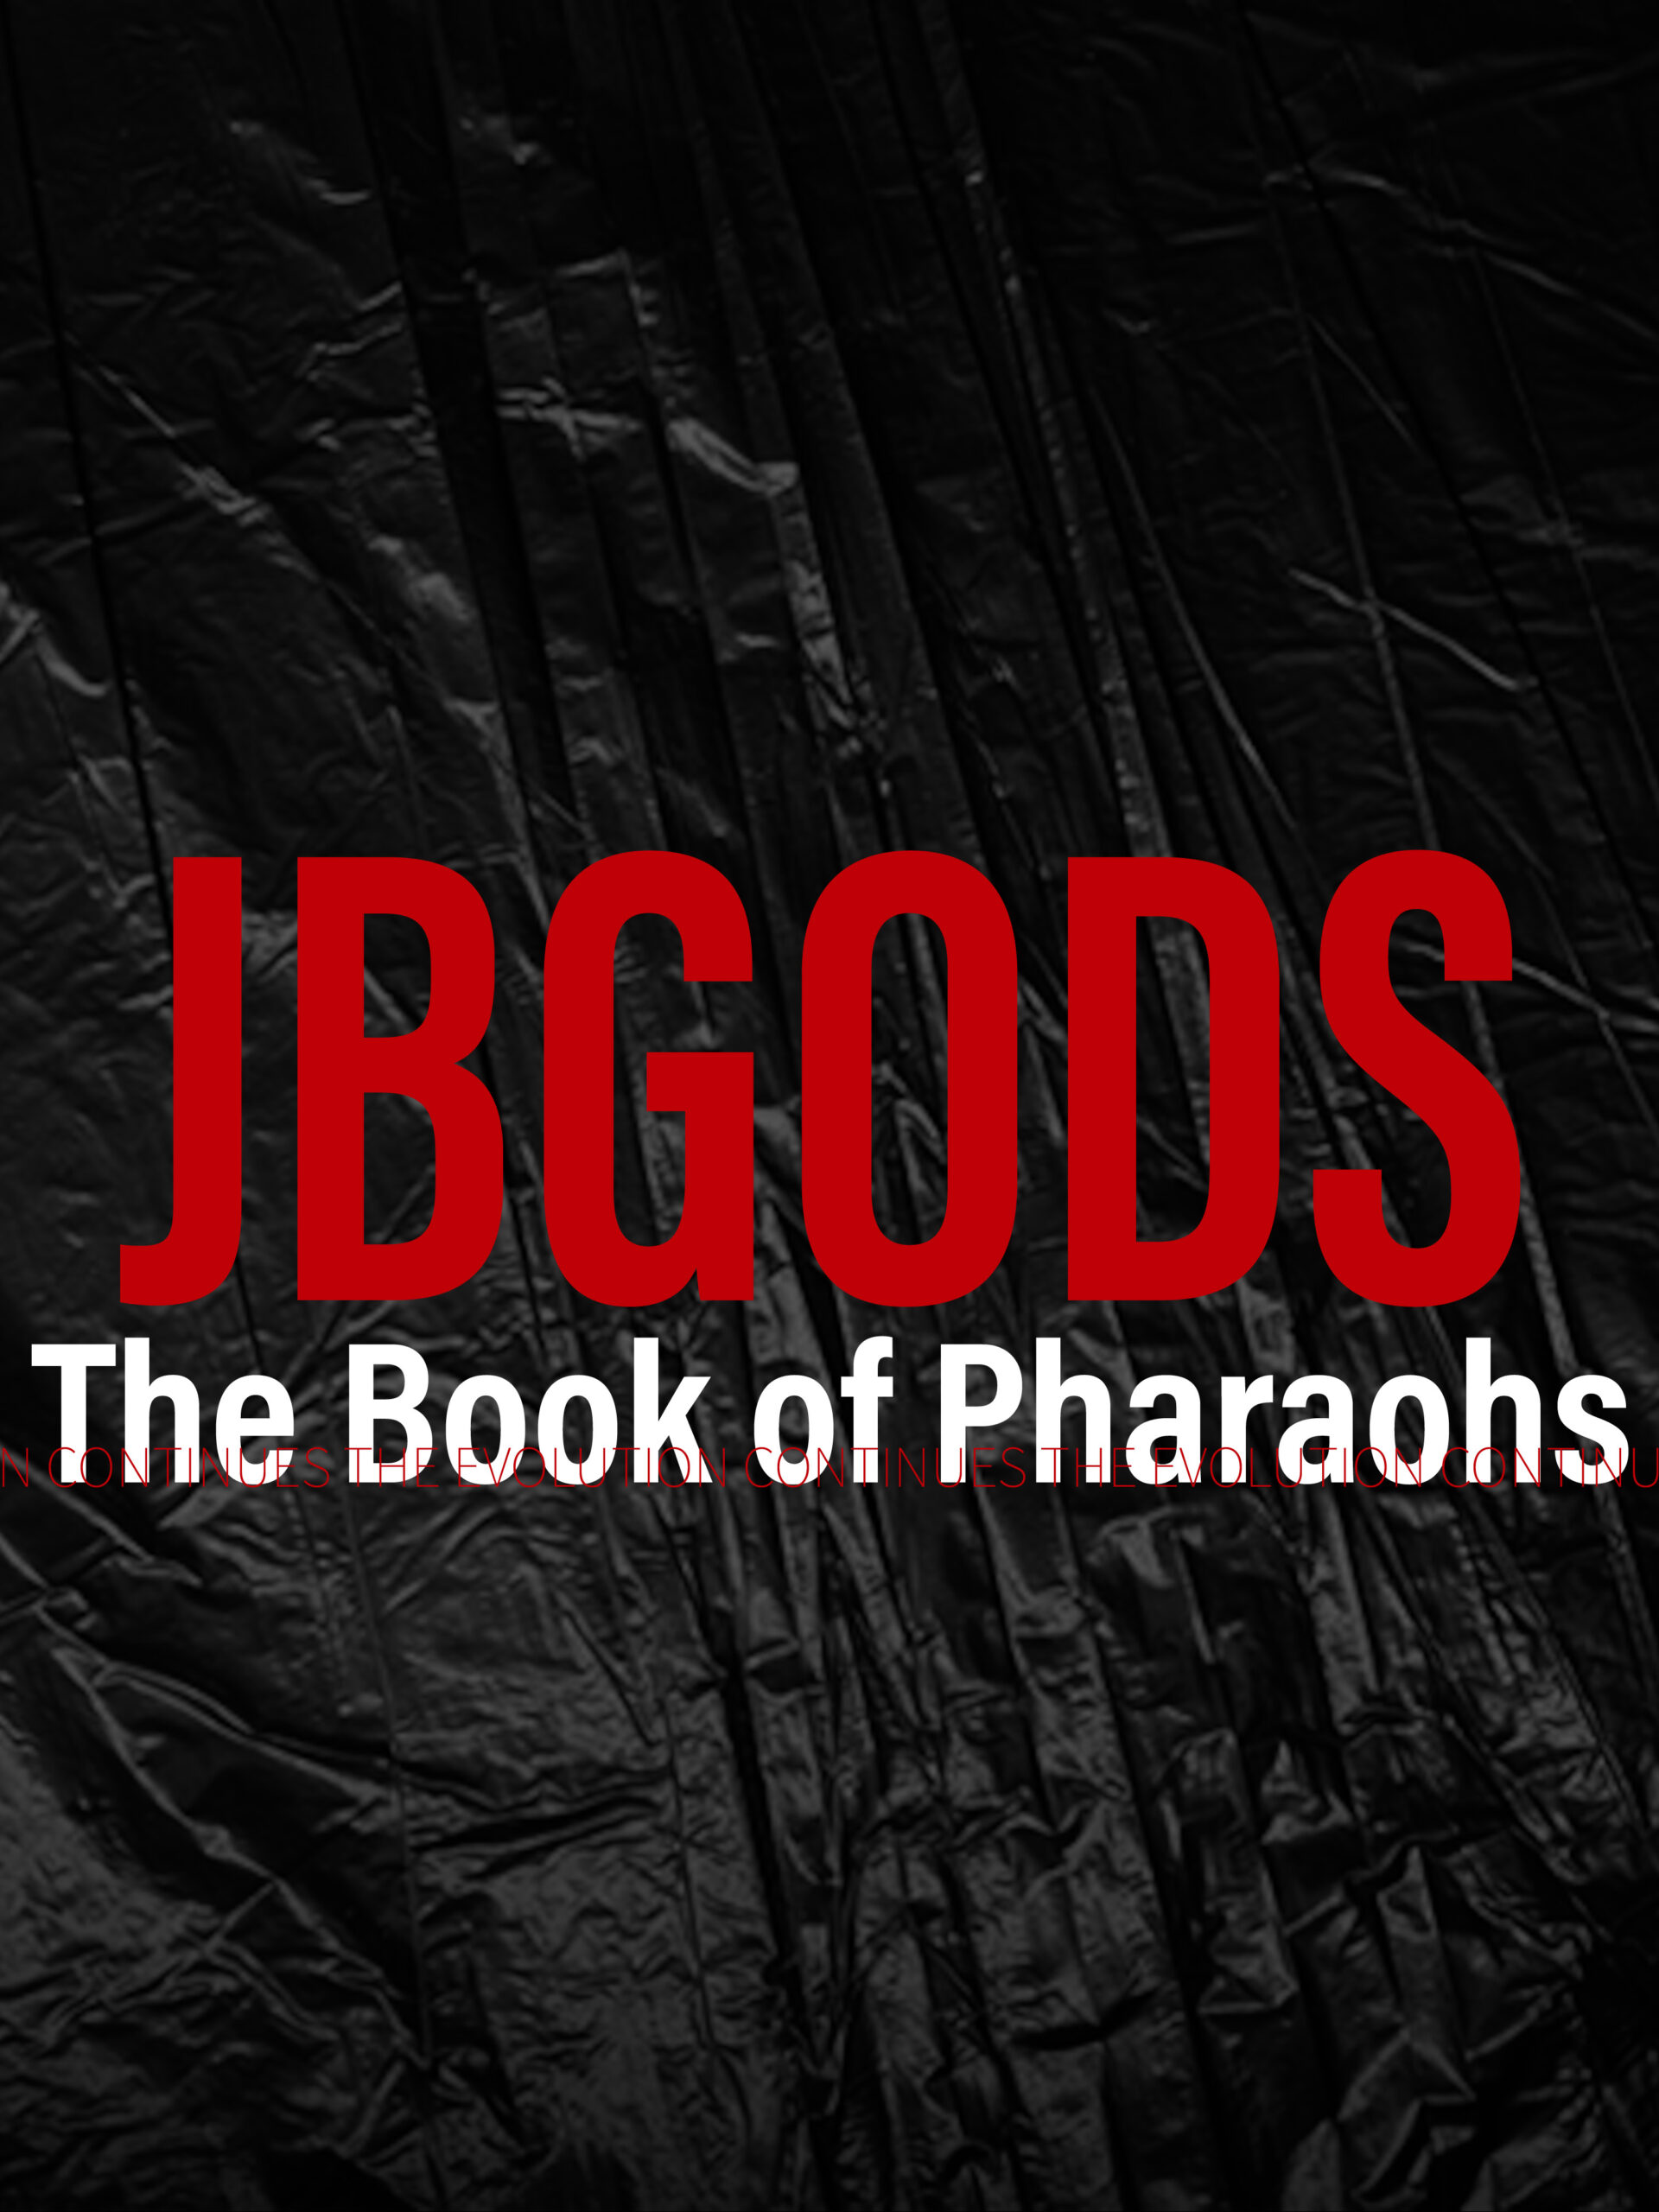 JBGODS musical artist album the Book of Pharaohs